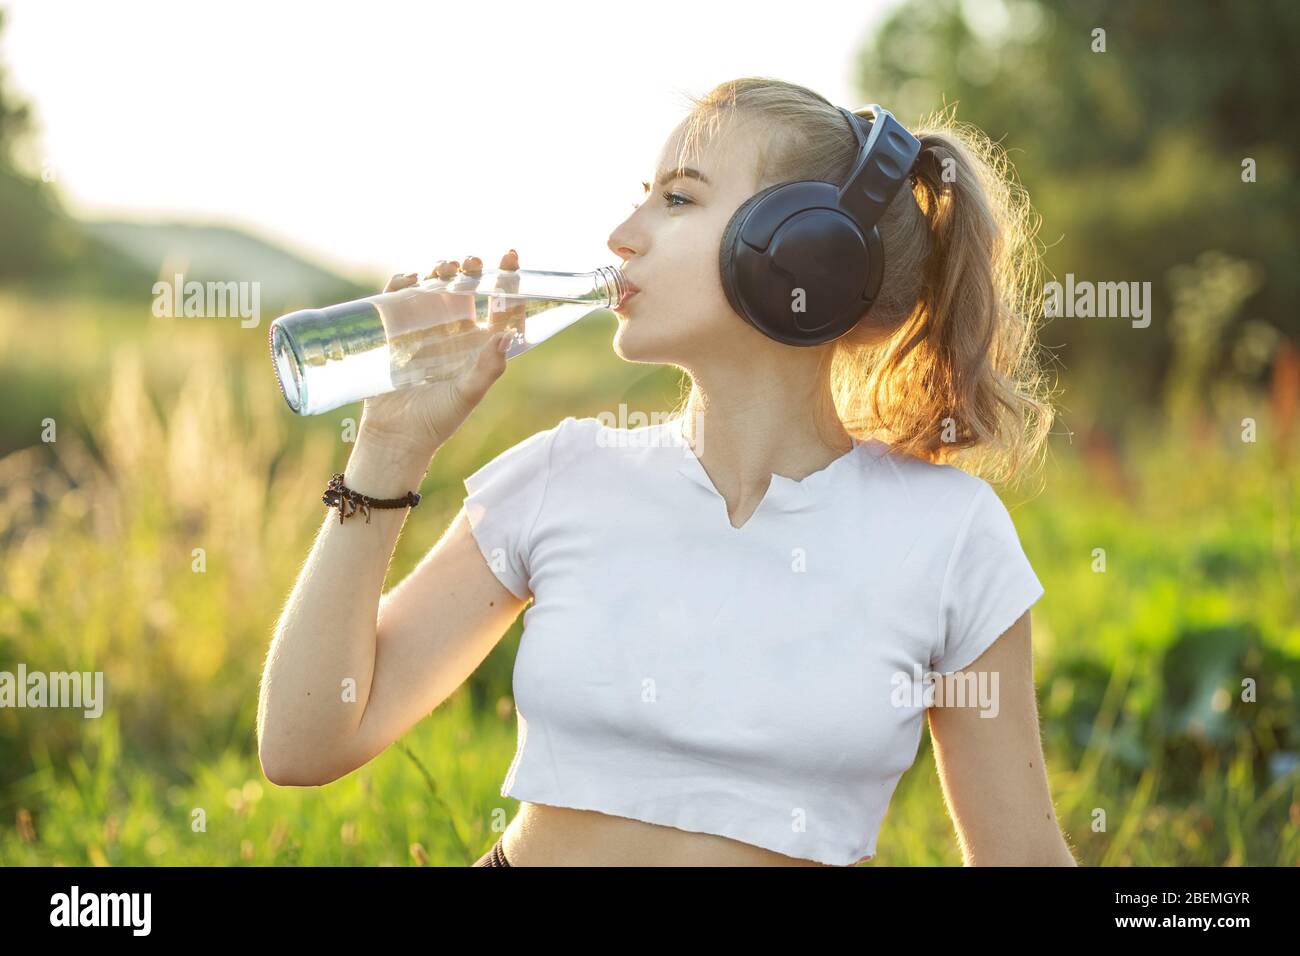 Une fille sportive boit de l'eau. Adolescent dans le casque. Le concept de sport, d'été et de mode de vie sain. Banque D'Images